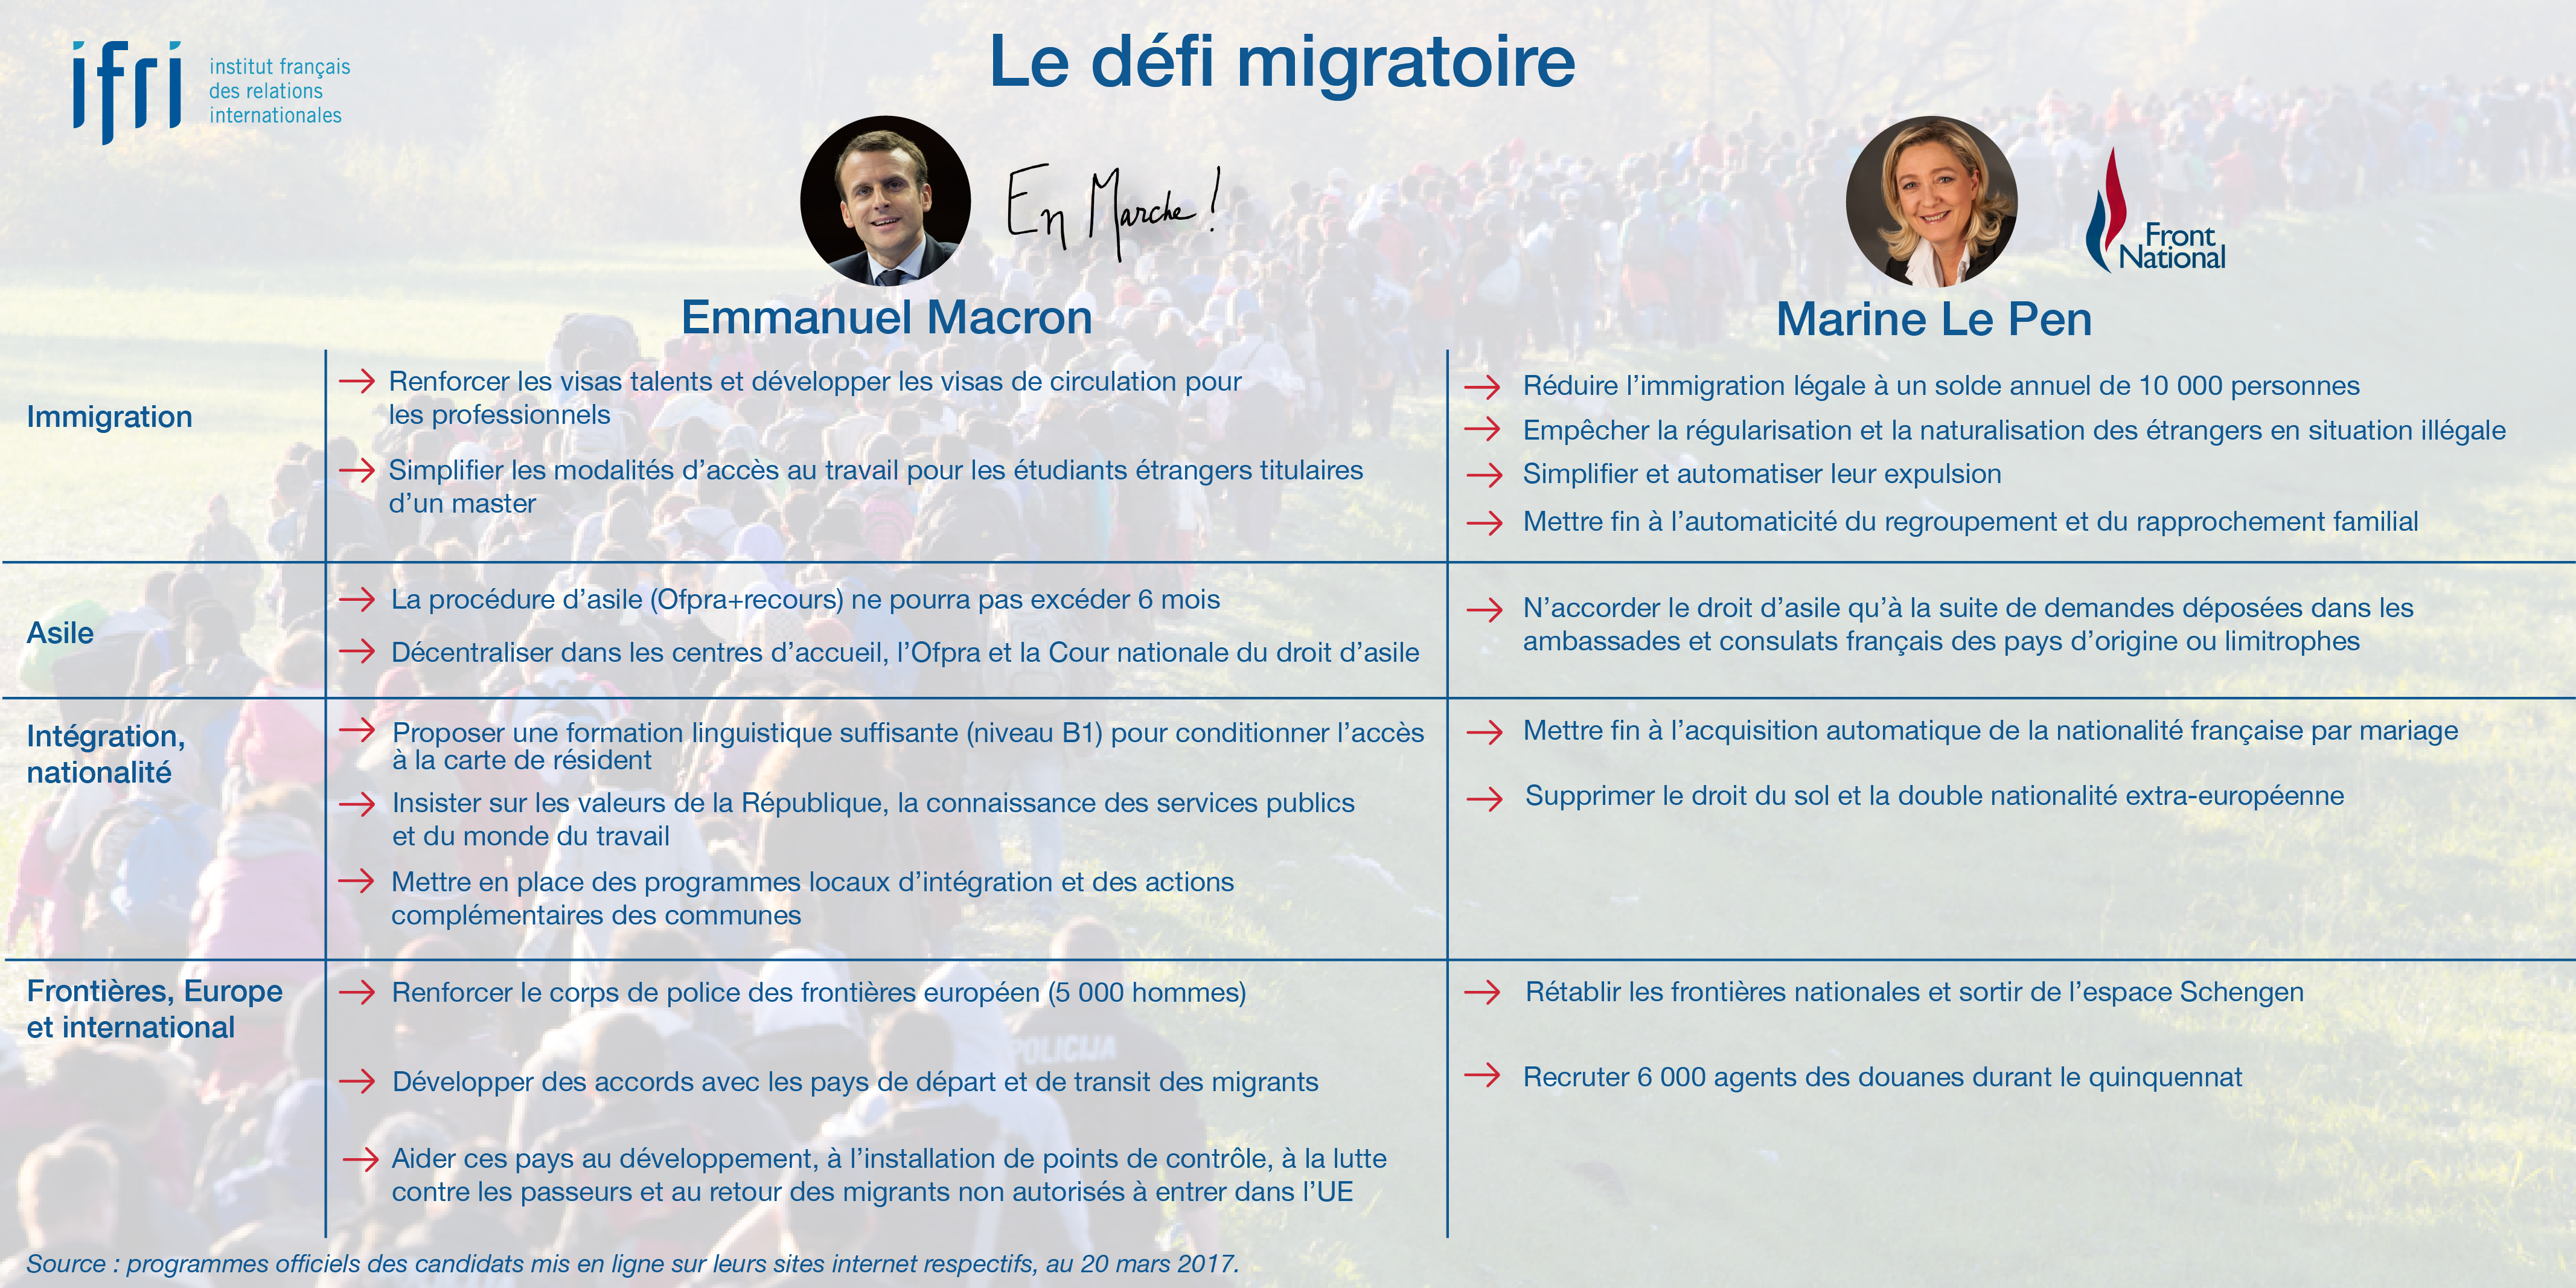 Le défi migratoire - Macron - Le Pen - Présidentielle 2017